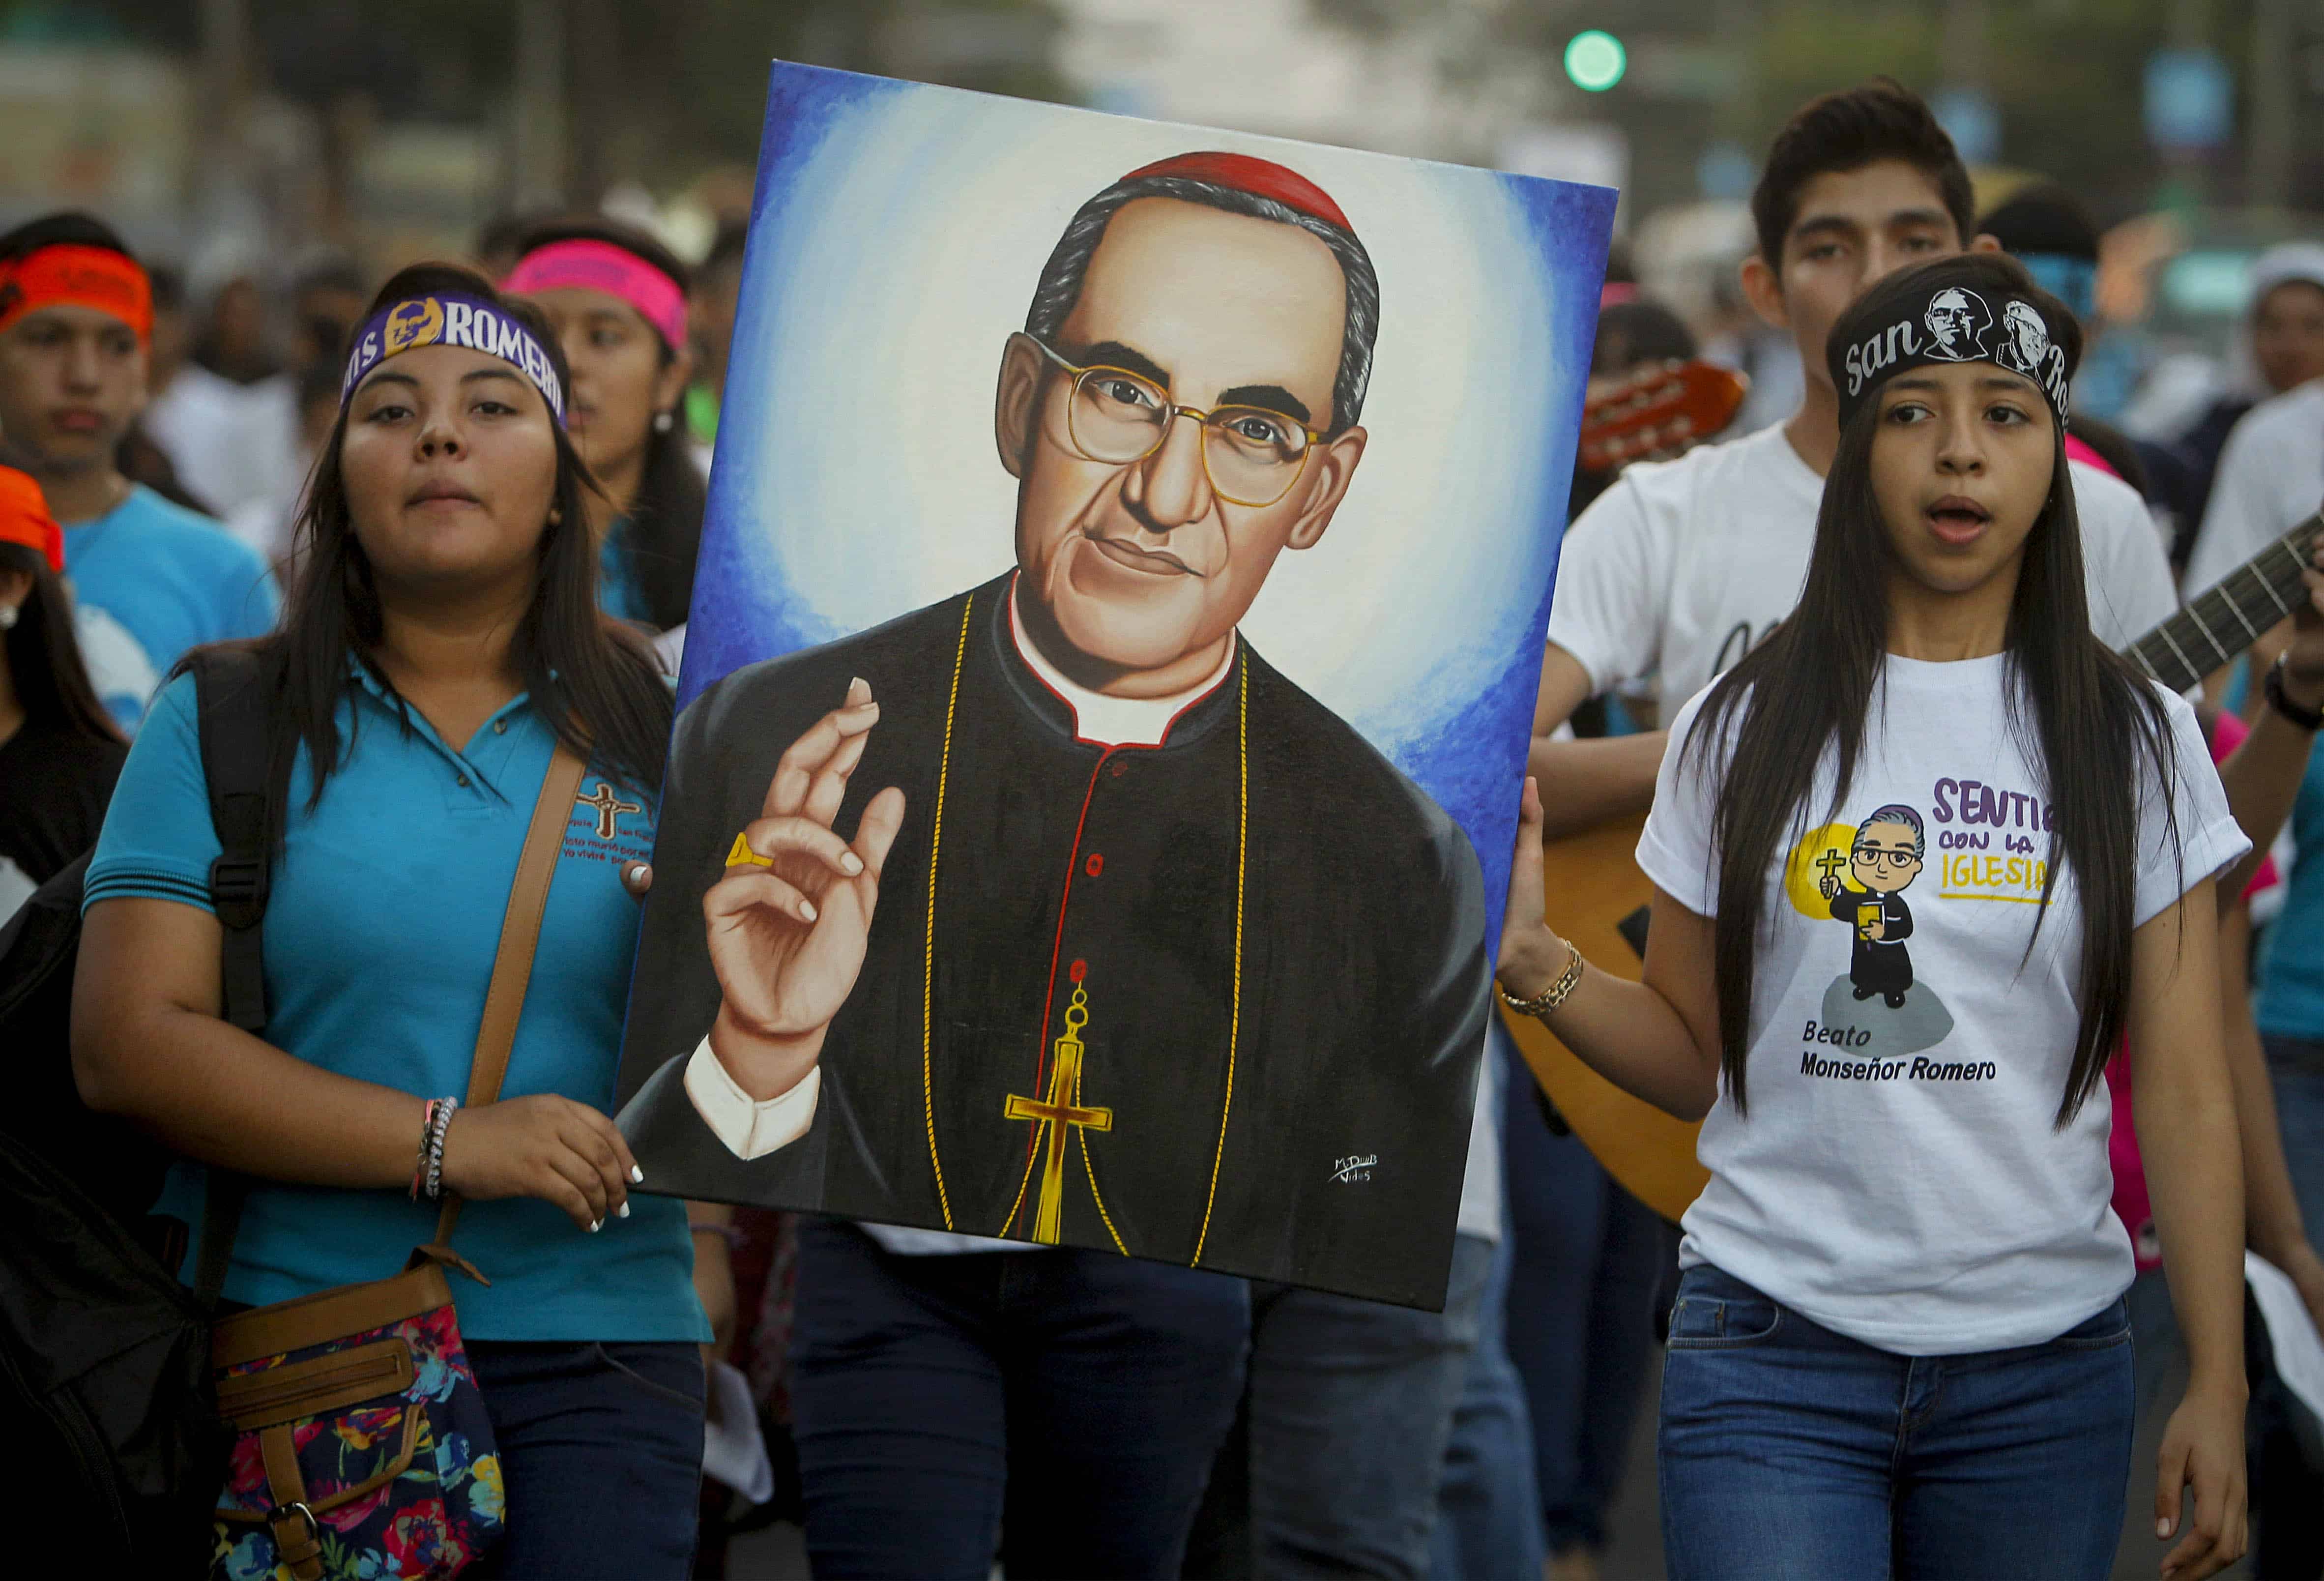 A Brief History of Romero’s Canonization